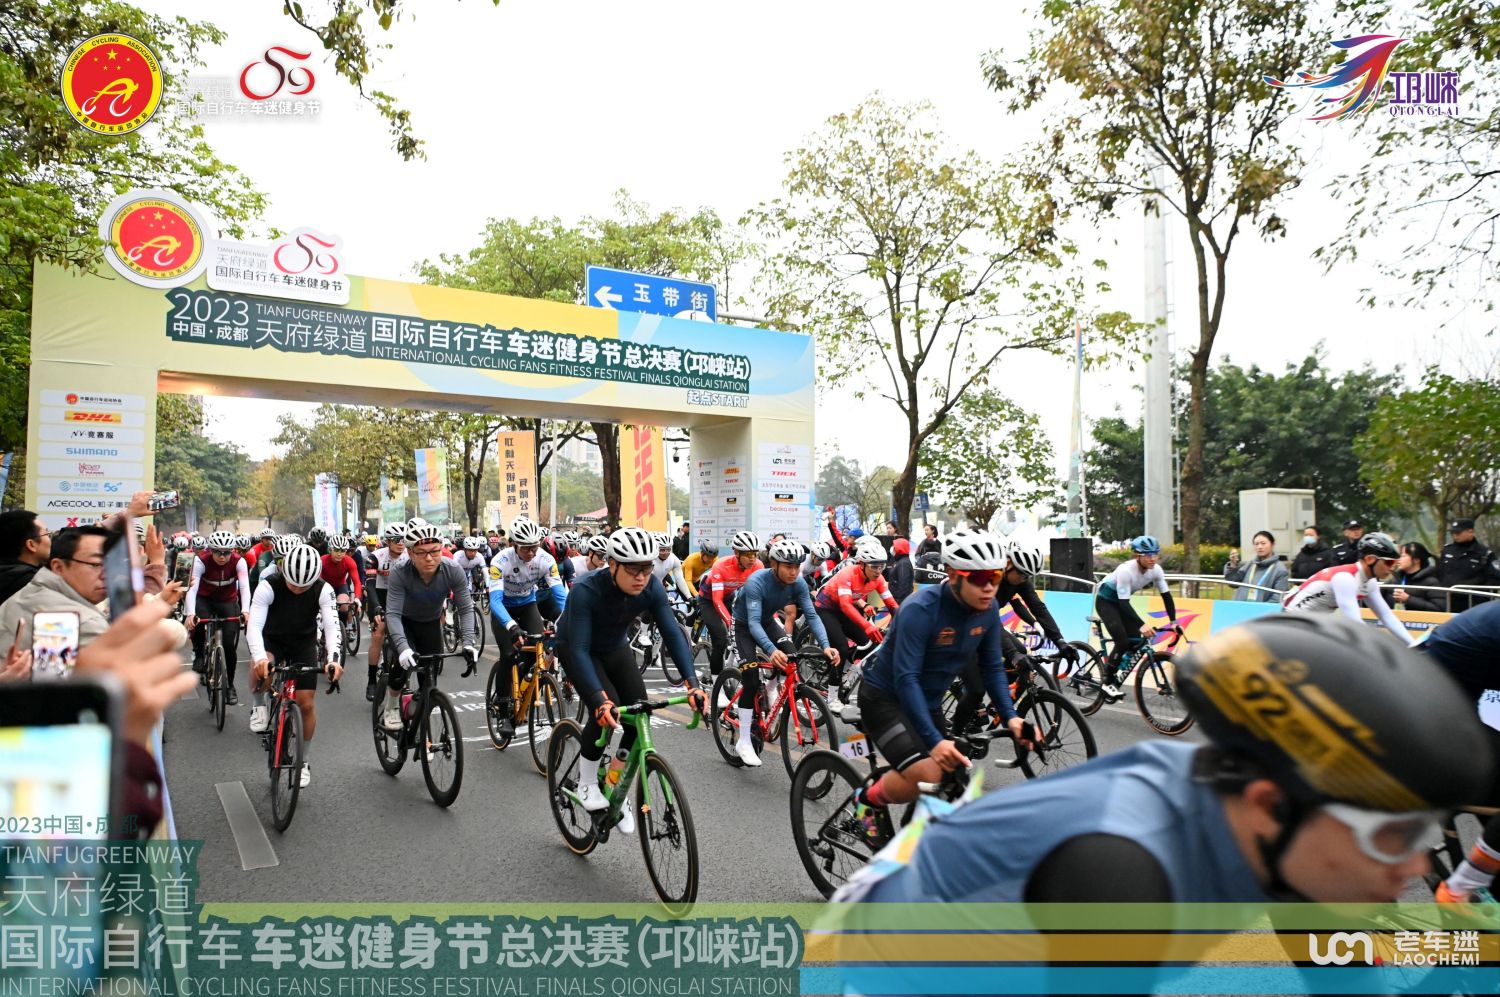 بیوکا نے 2023 تیانفو گرین وے انٹرنیشنل سائیکلنگ فینز فٹنس فیسٹیول کے فائنلز میں ایتھلیٹس کو اسپرٹ کرنے میں مدد کی